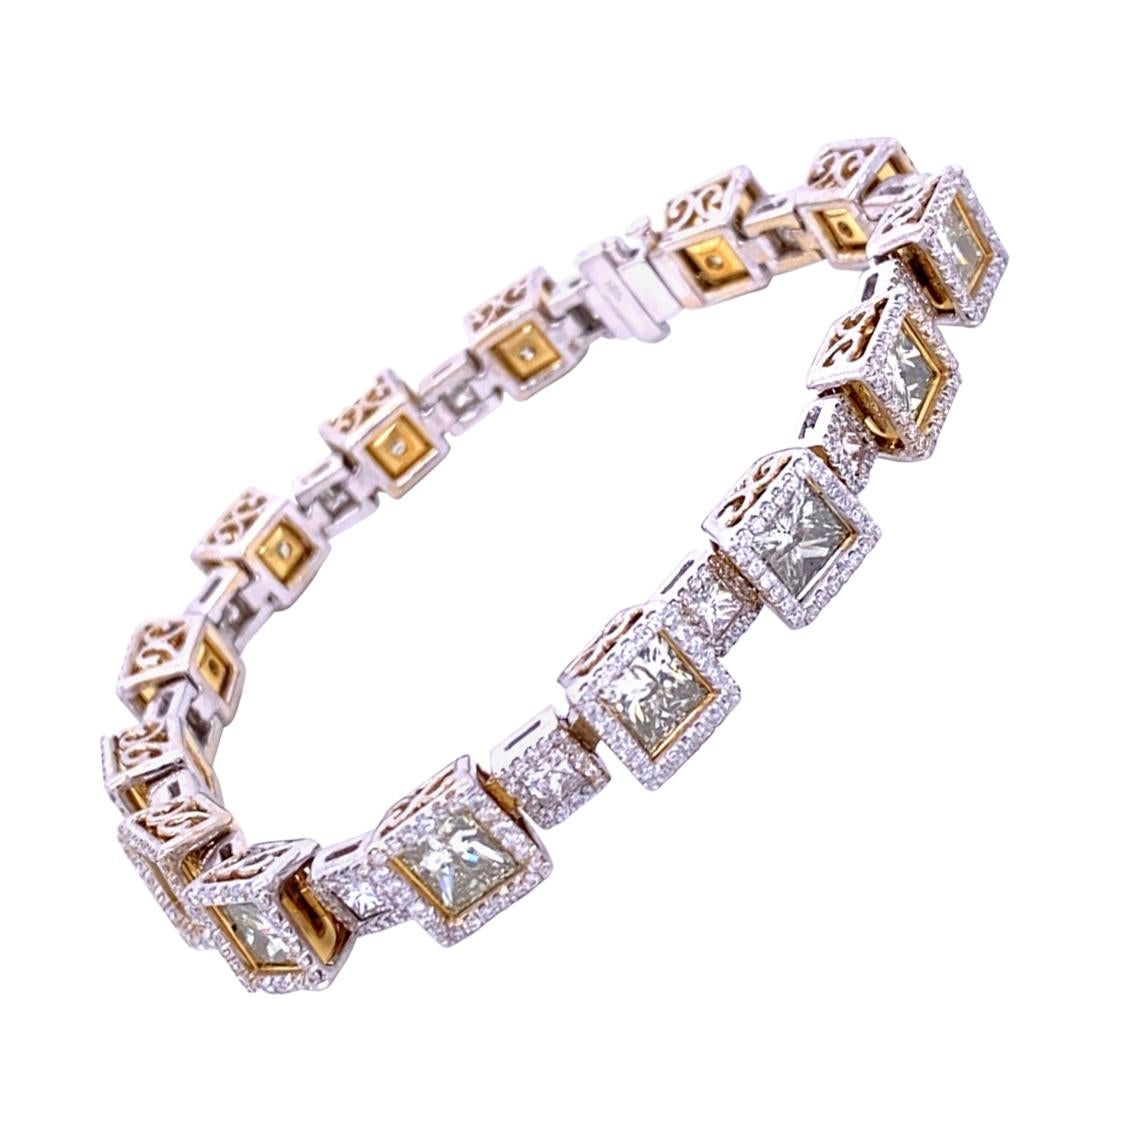 Dieses wunderschöne Diamant-Tennisarmband aus 18 Karat Gold  besteht aus 14 großen und 15 kleinen Gliedern mit Princess-Cut-Zentren, die von einem Halo in Pflastersteinoptik umgeben sind. 
Gesamtgewicht der großen Diamanten: 13.81